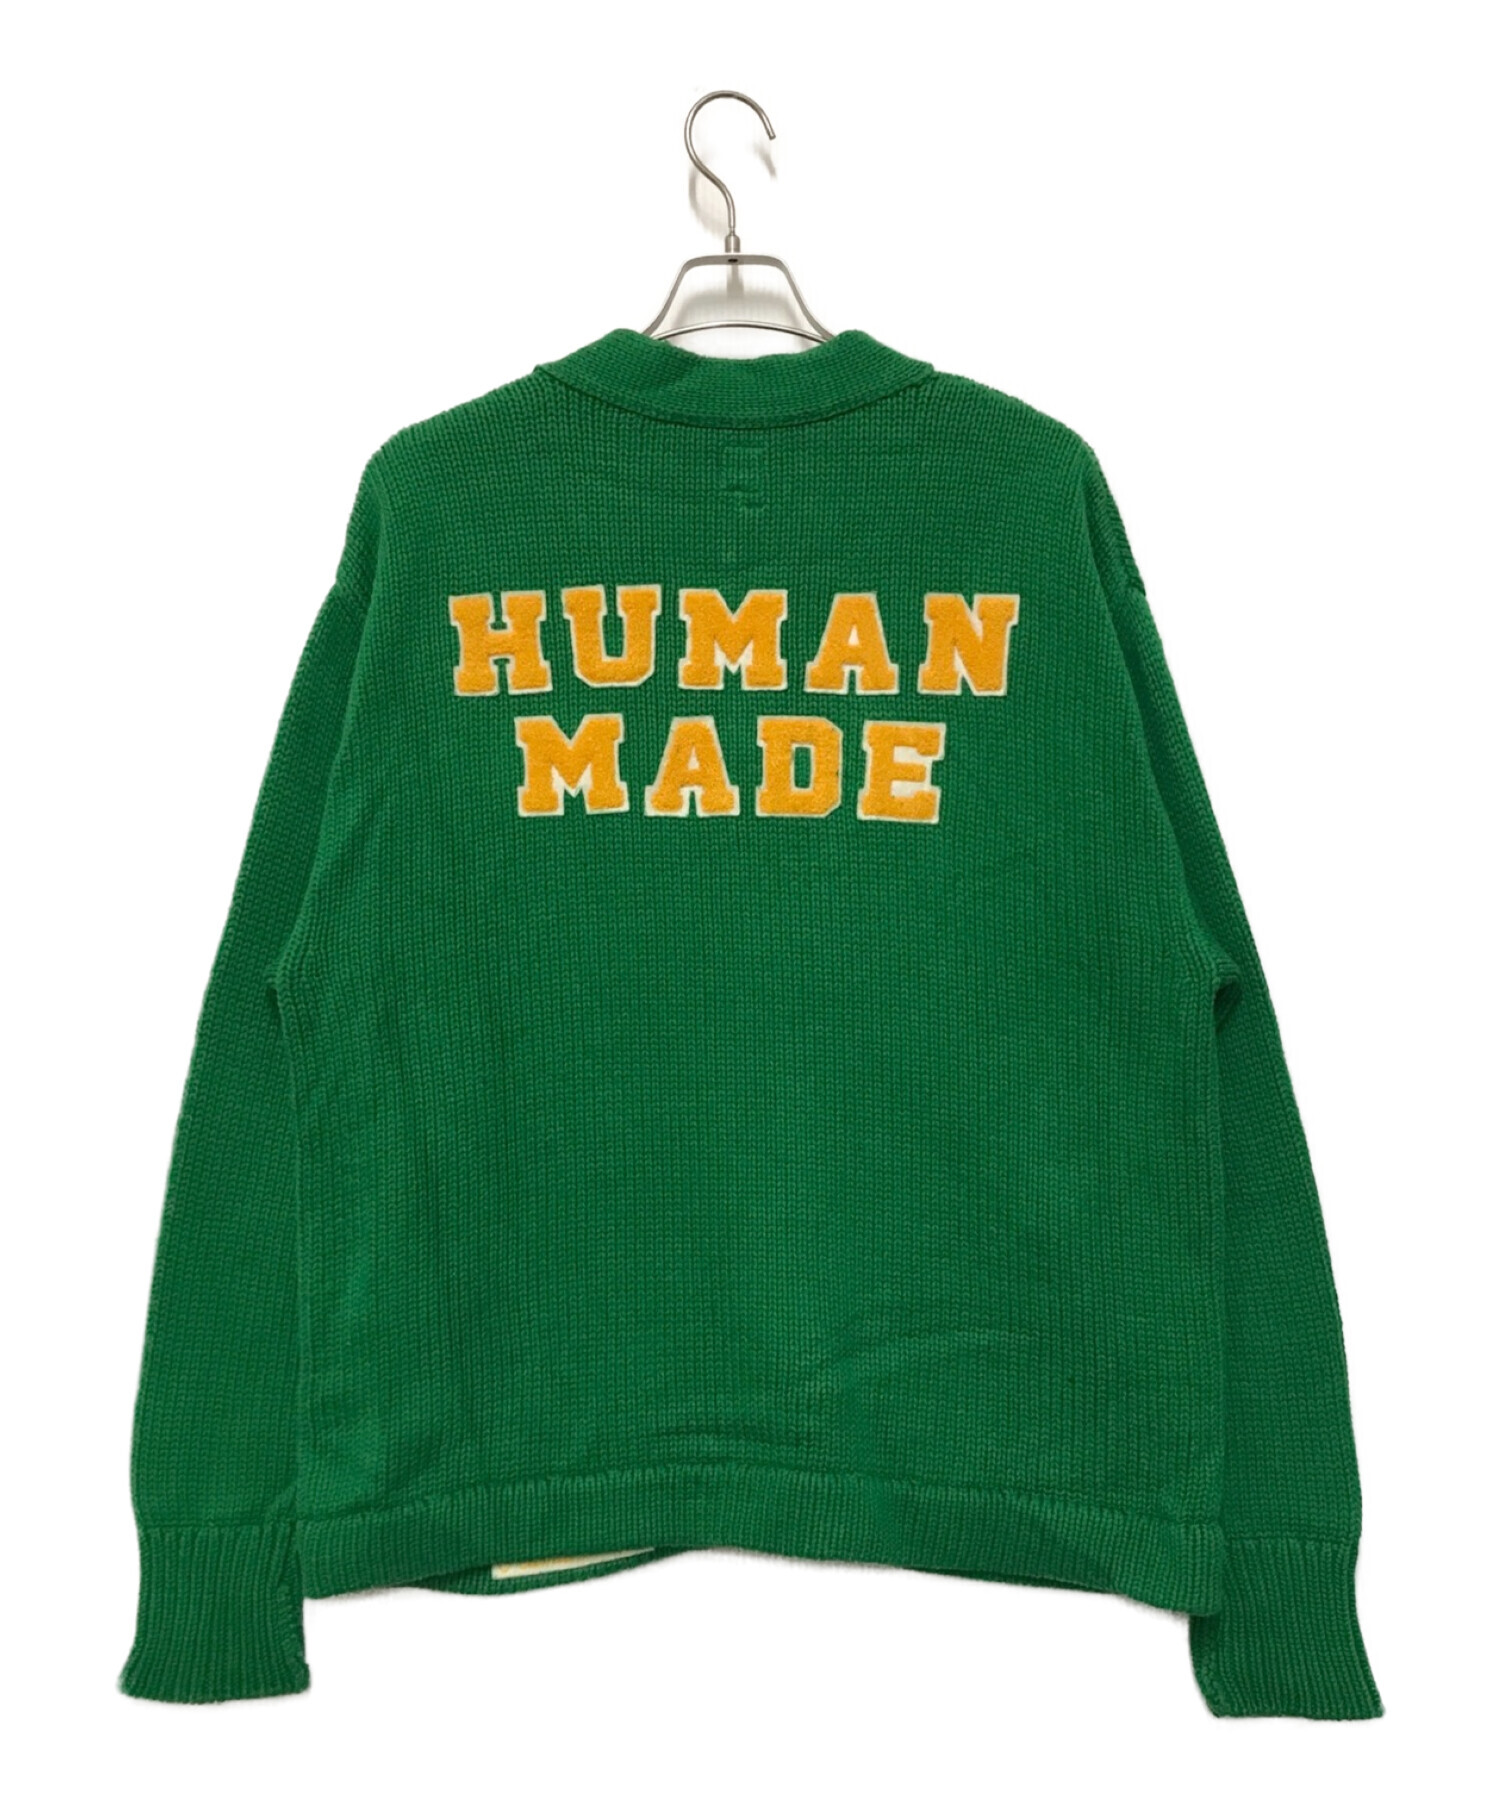 HUMAN MADE (ヒューマンメイド) Low Gauge Knit Cardigan グリーン サイズ:Ⅼ